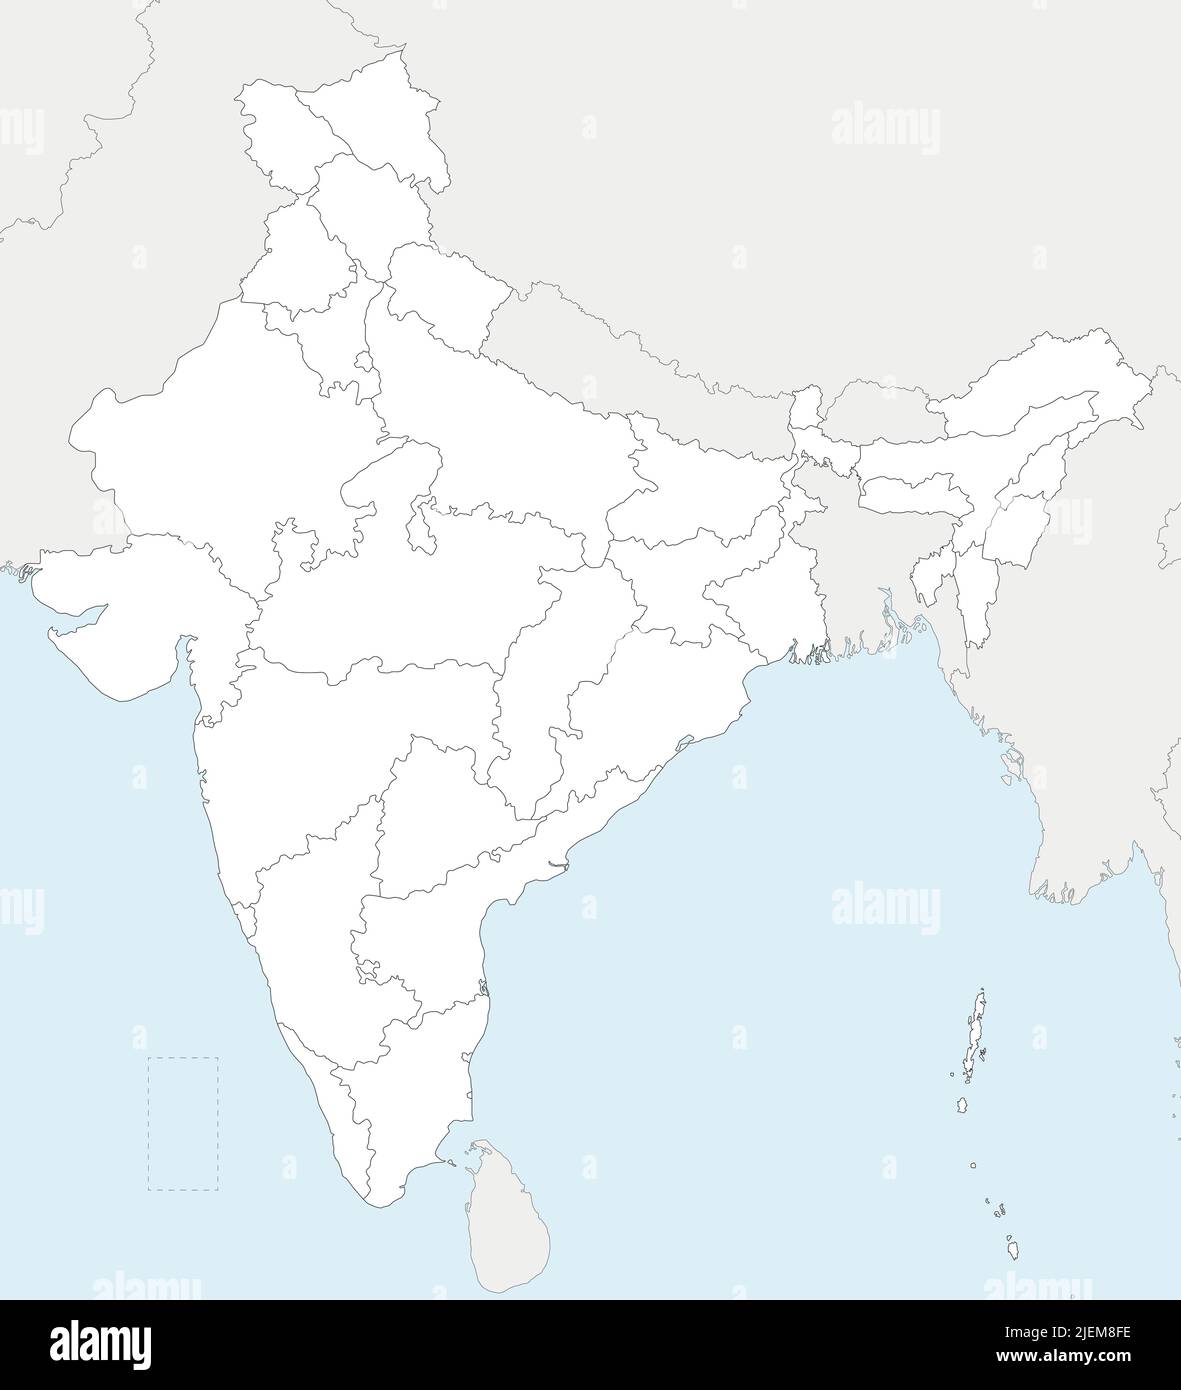 Mapa vectorial en blanco de la India con estados y territorios y divisiones administrativas, y países vecinos. Capas editables y claramente etiquetadas. Ilustración del Vector